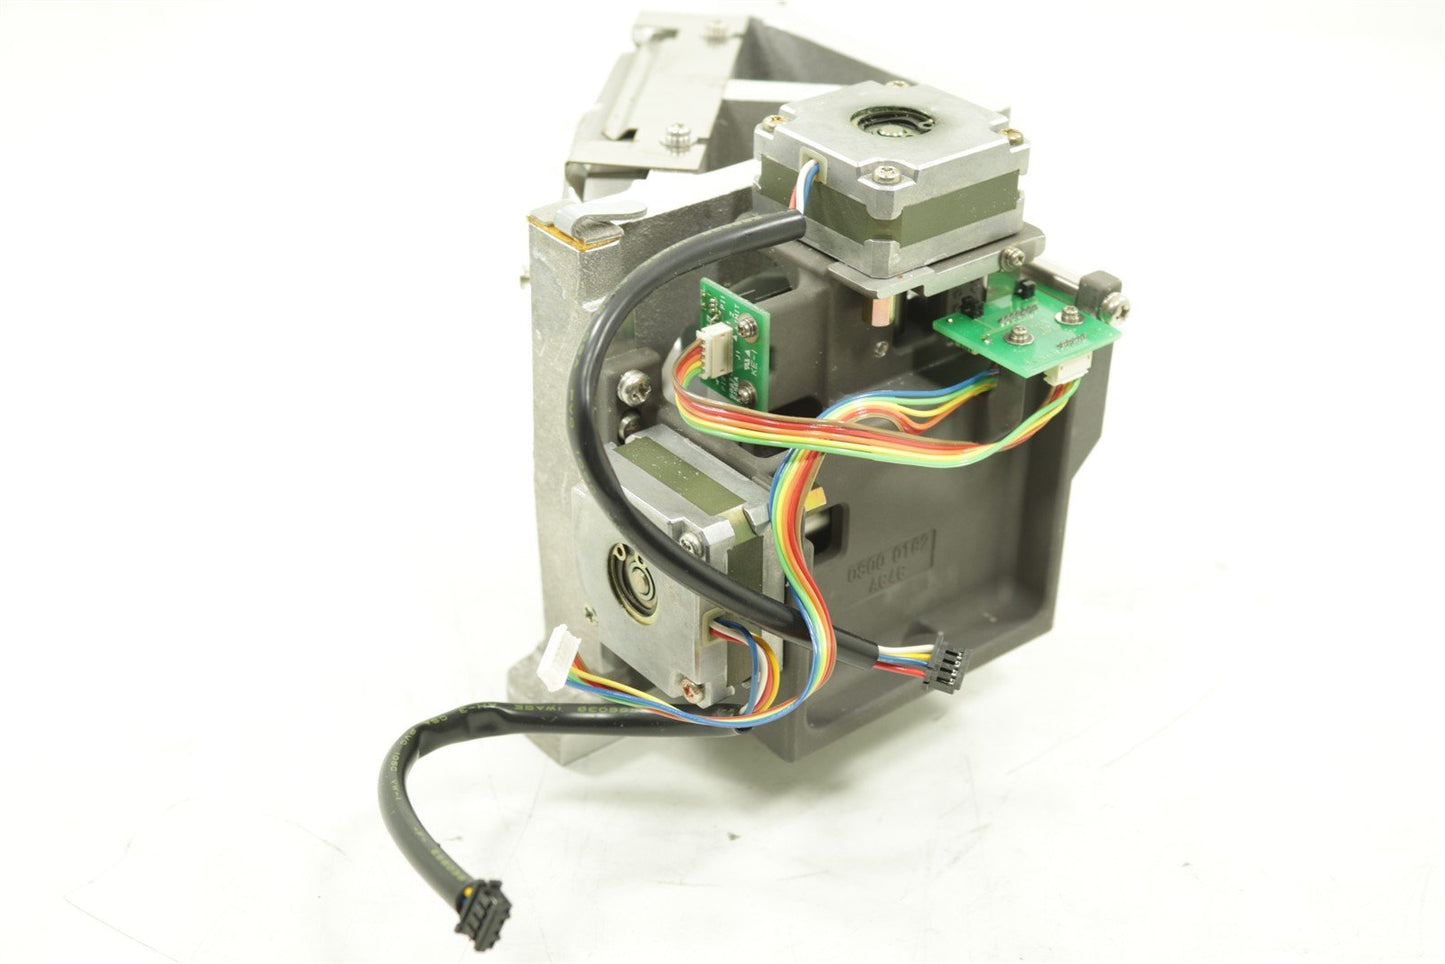 Jasco Spectrometer FT/IR Beam Splitter With Motorized Moving Mirror